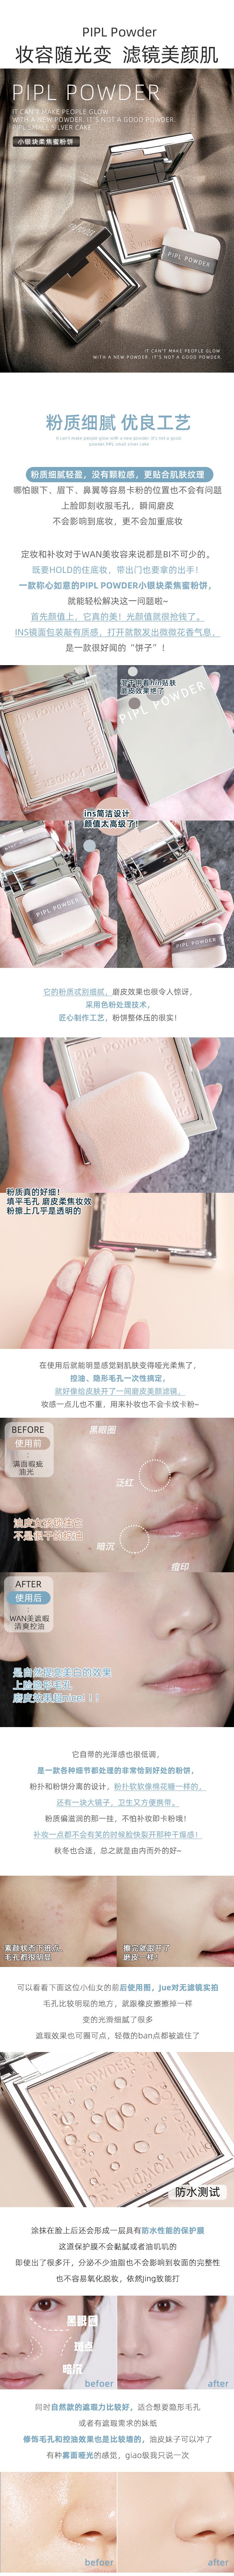 中國 PIPL 小銀塊定妝粉餅 持久蜜粉 #01 自然膚色